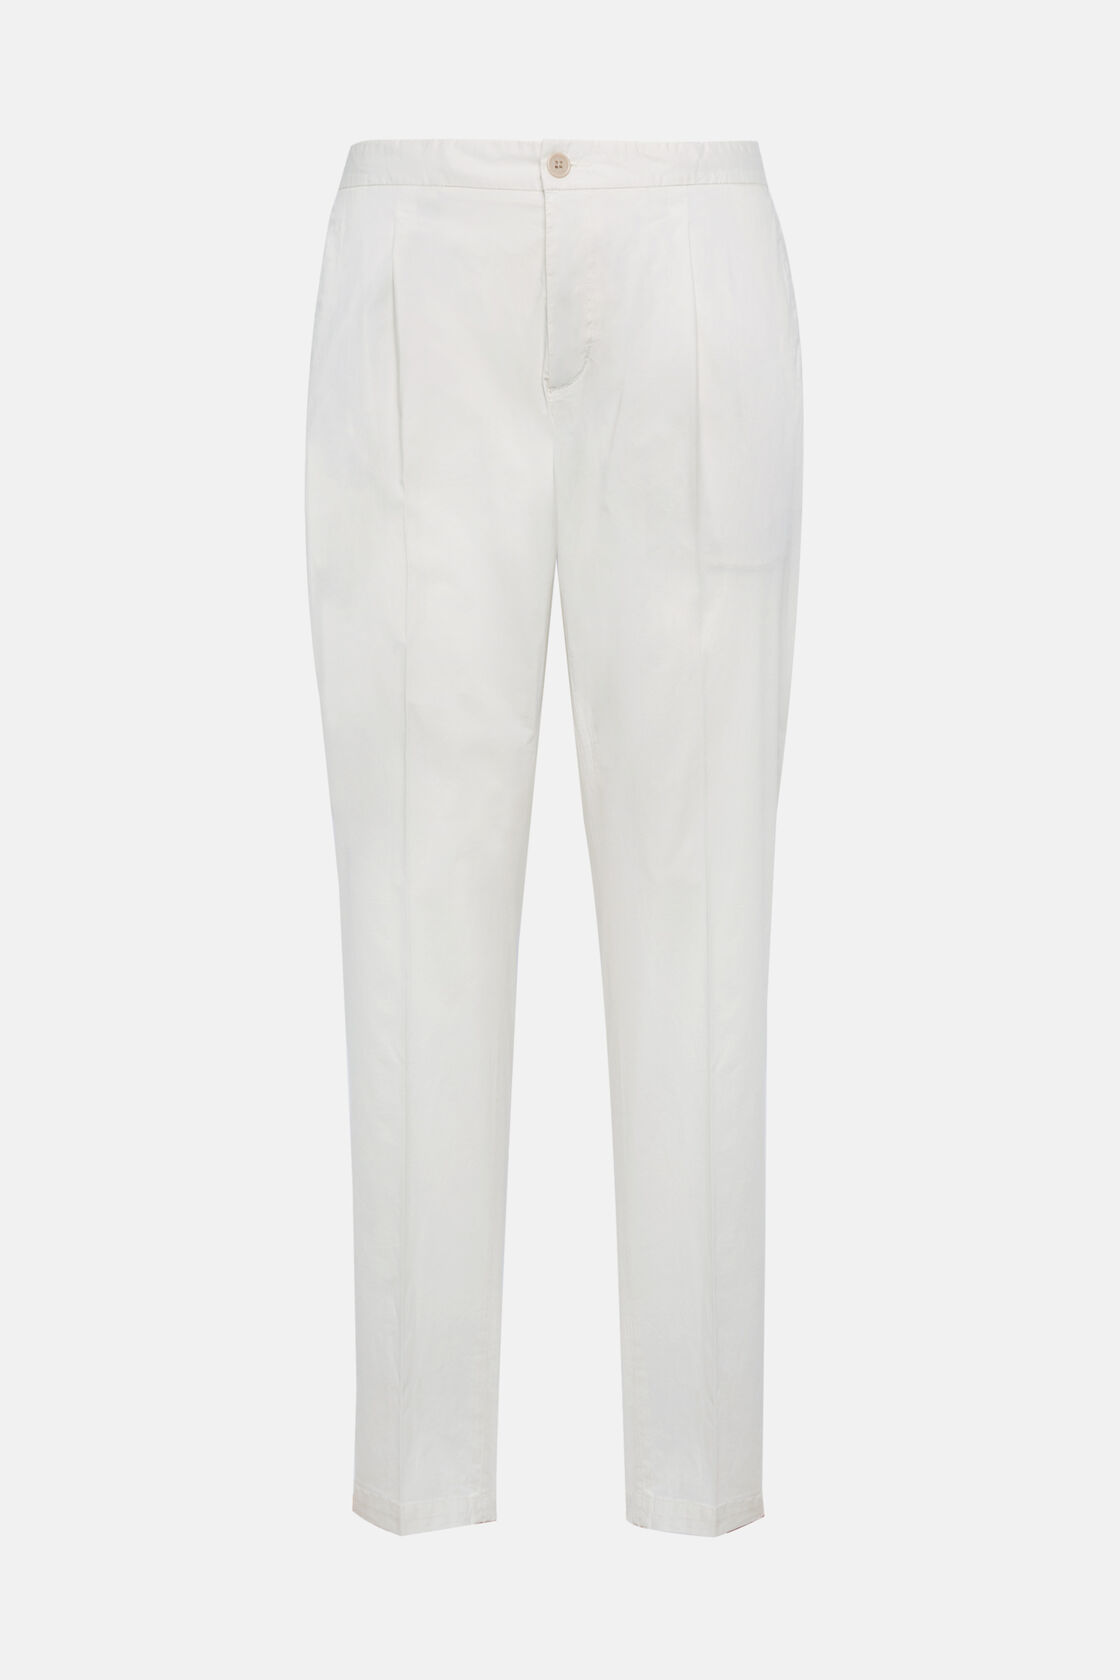 Stretch Cotton Pinces Pants, White, hi-res